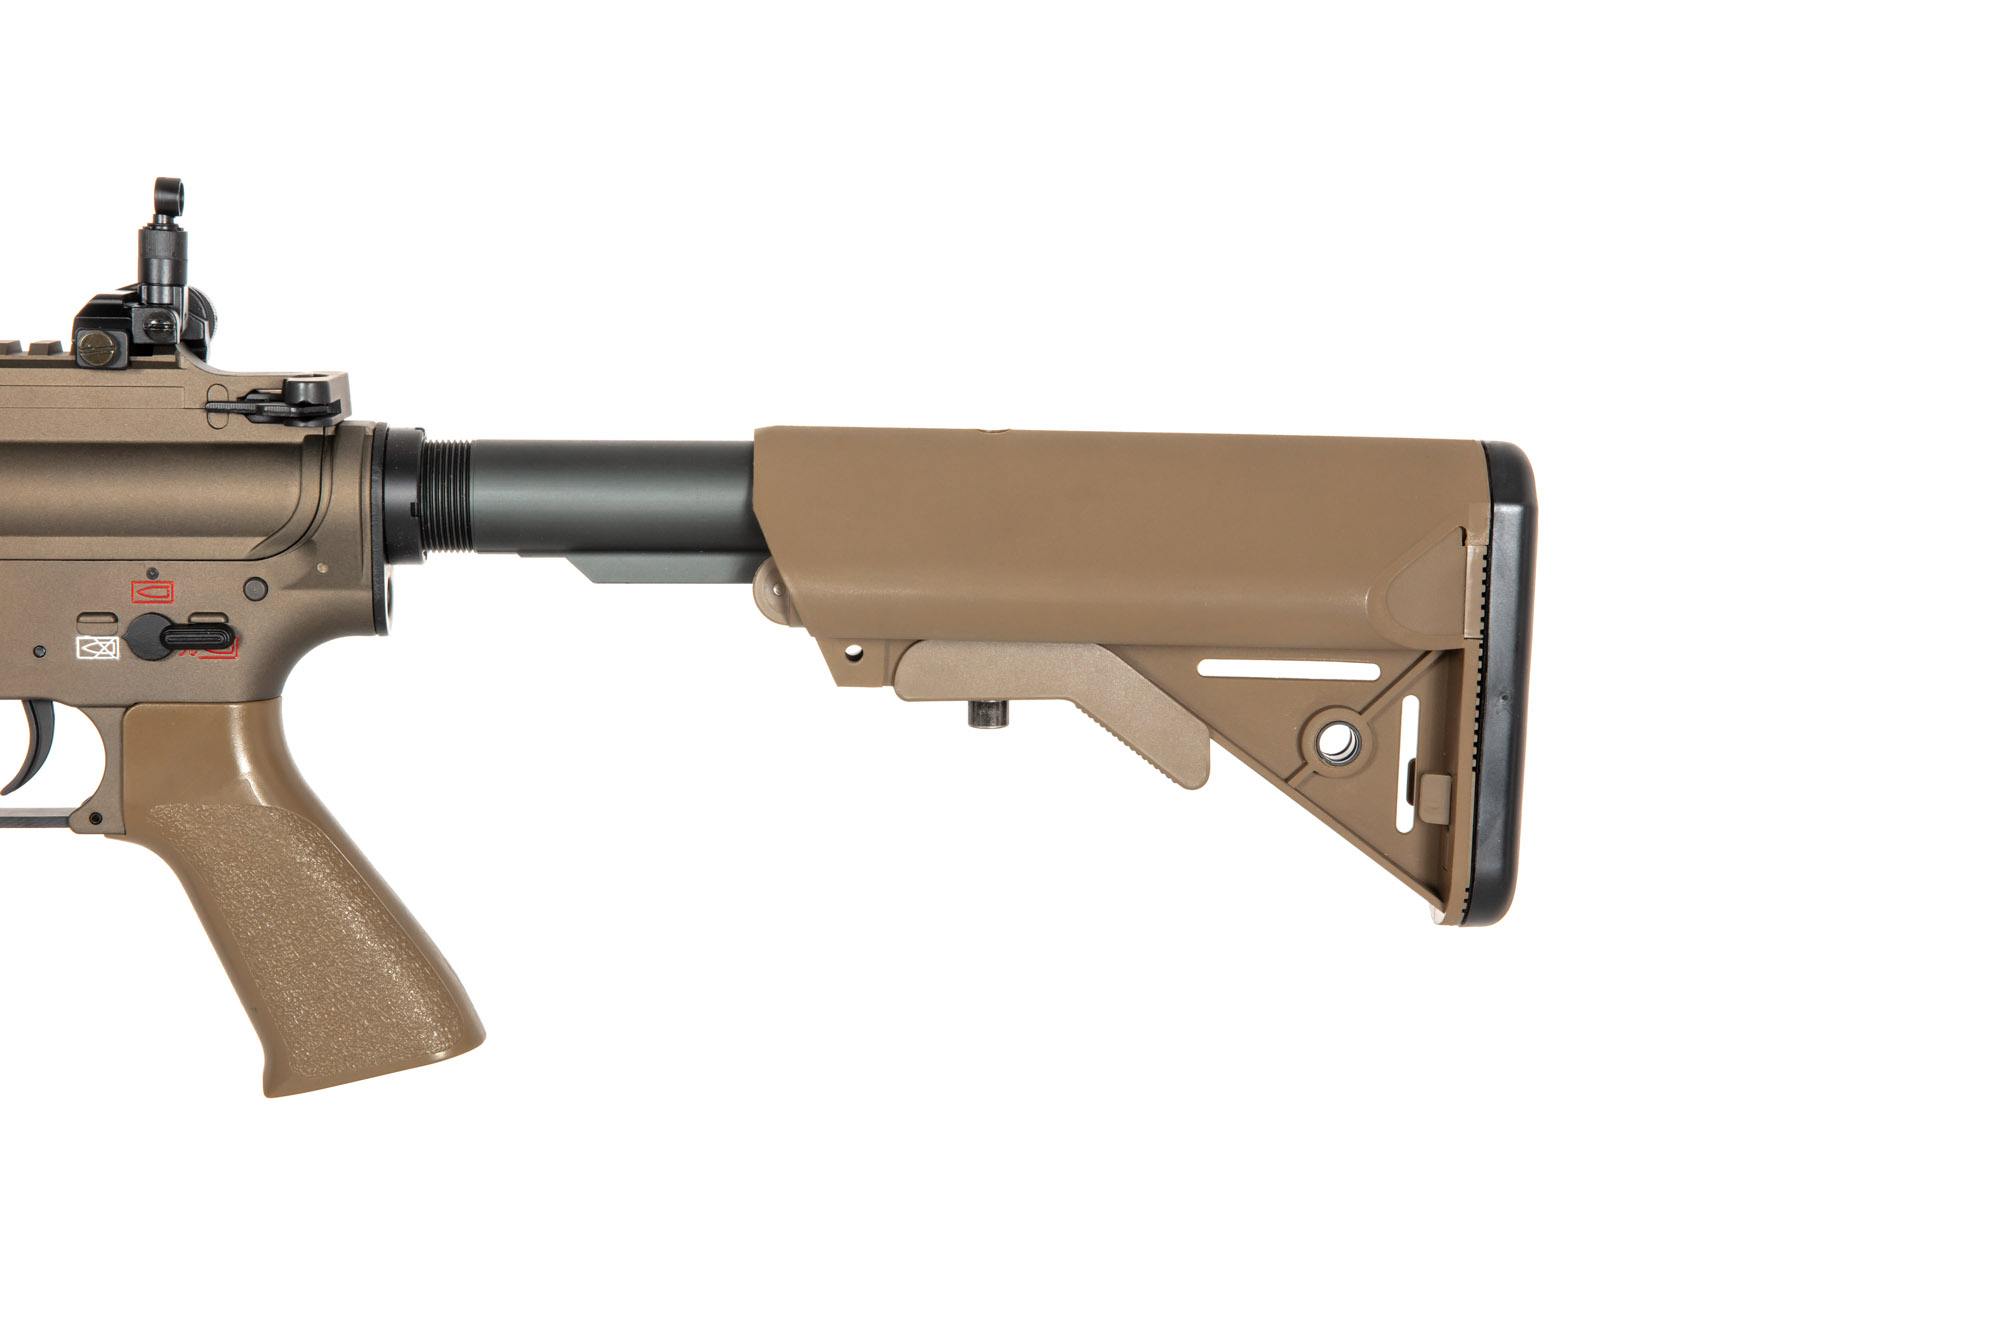 HK416A5 812S Replica di carabina - marrone chiaro